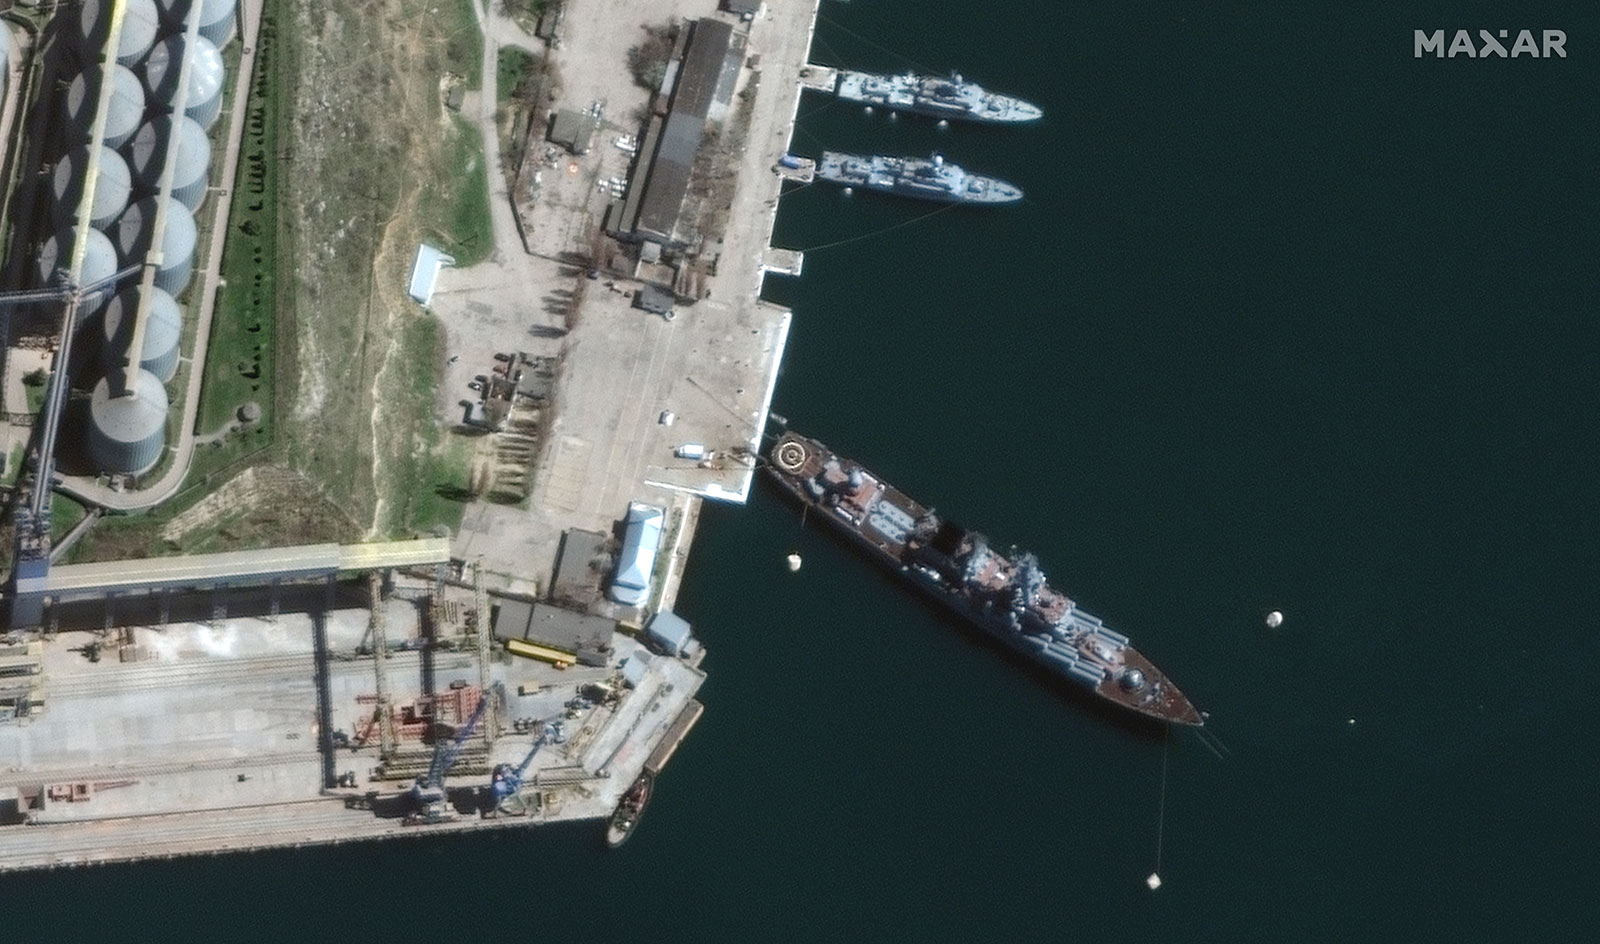 O imagine din satelit arată nava de război rusească Moskva în portul Sevastopol, Crimeea, pe 7 aprilie.